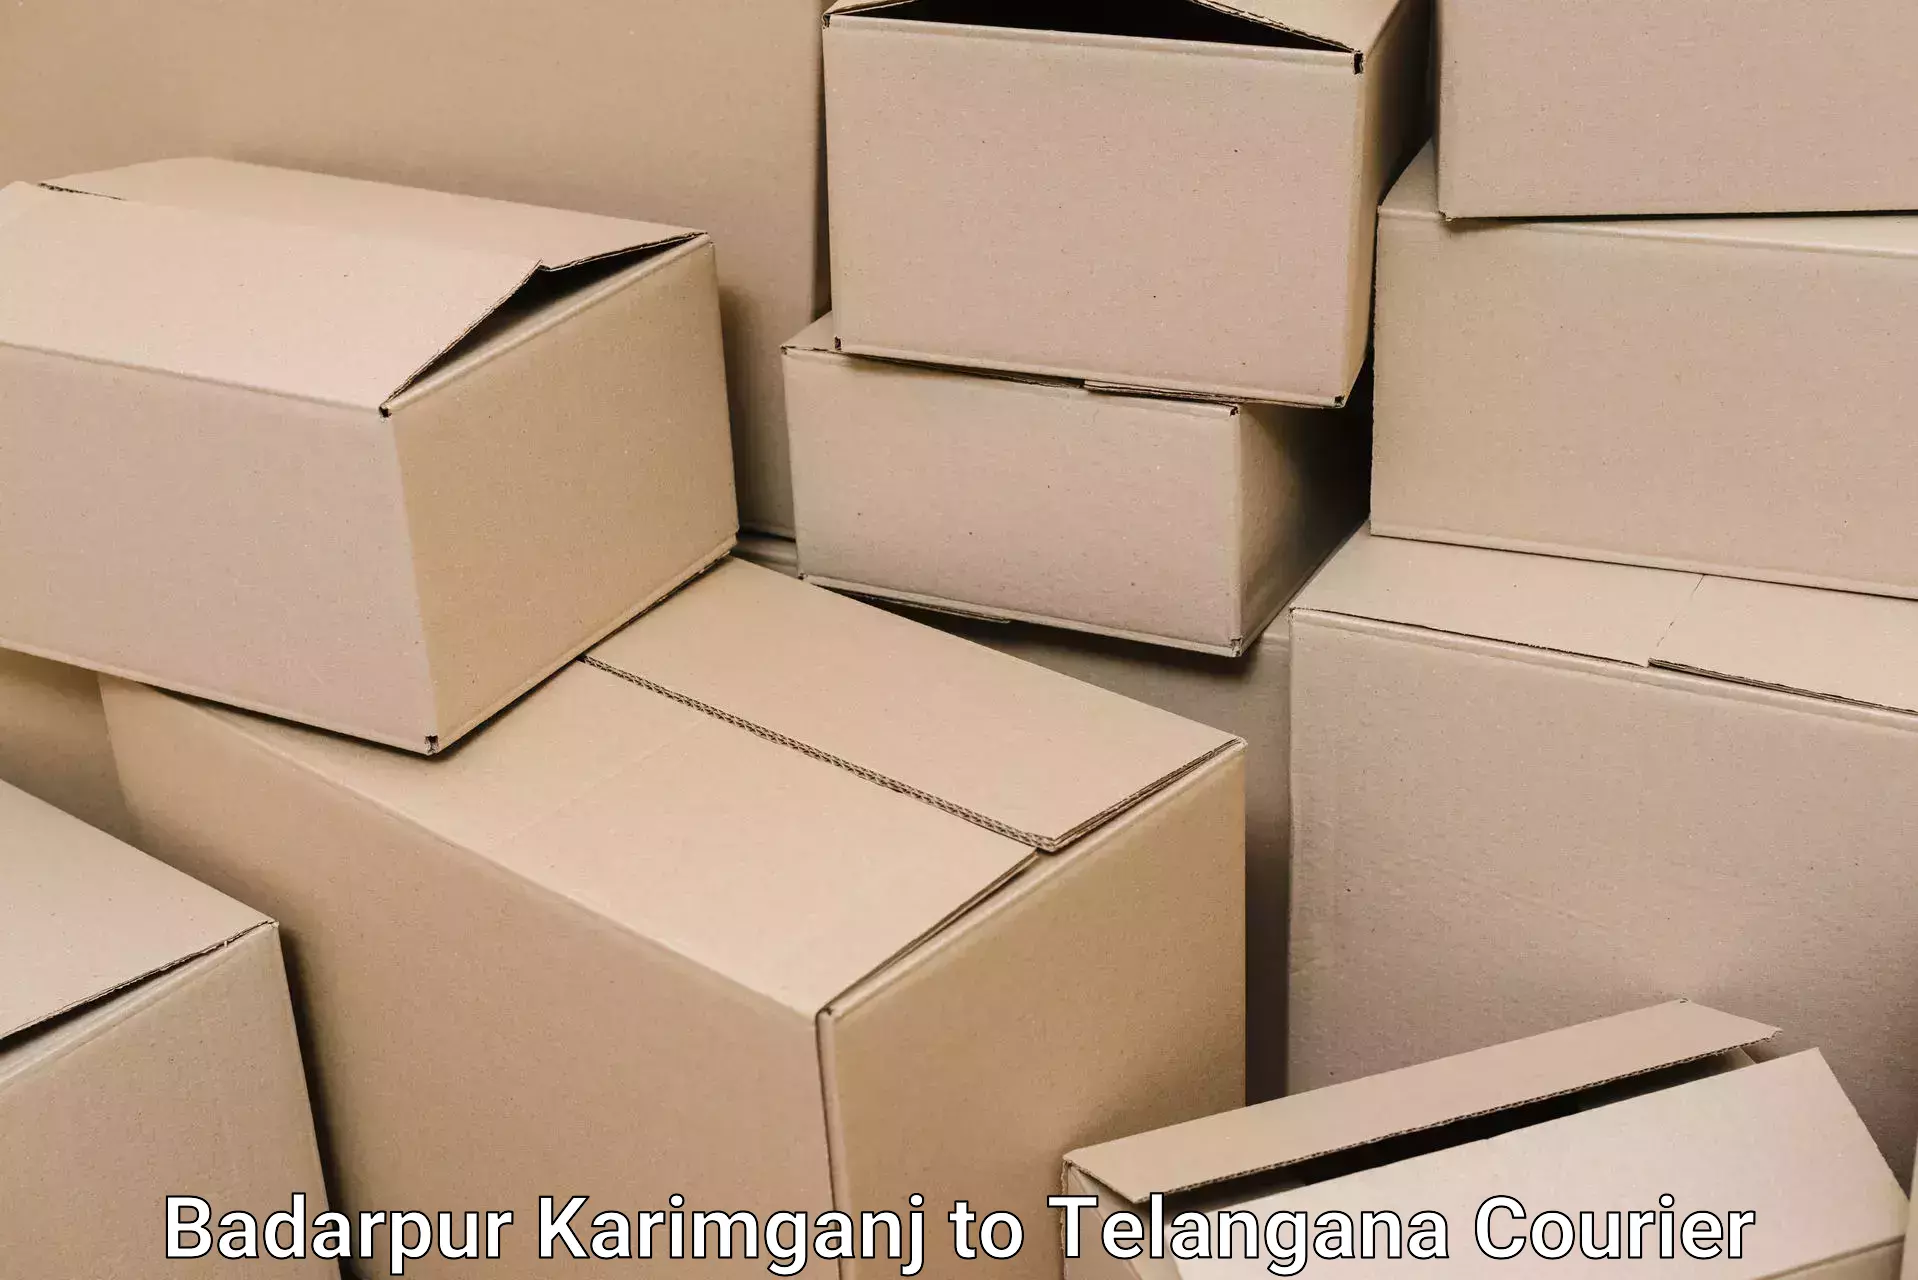 Door-to-door relocation services Badarpur Karimganj to Dharmapuri Jagtial